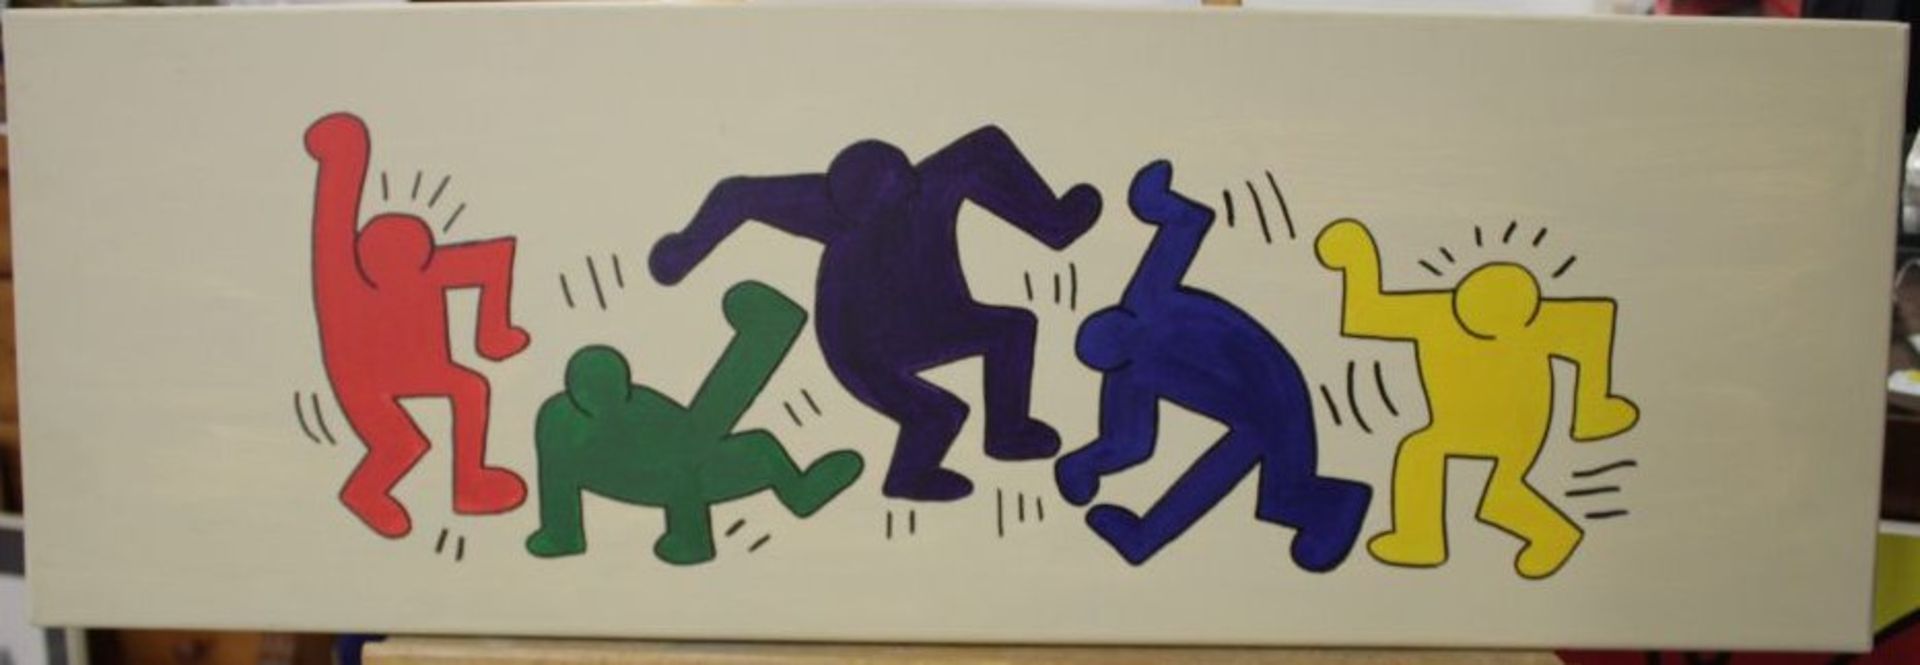 Kunstdruck auf Leinwand nach Keith Haring, ungerahmt, 30 x 90,5cm.- - -22.61 % buyer's premium on - Bild 2 aus 2